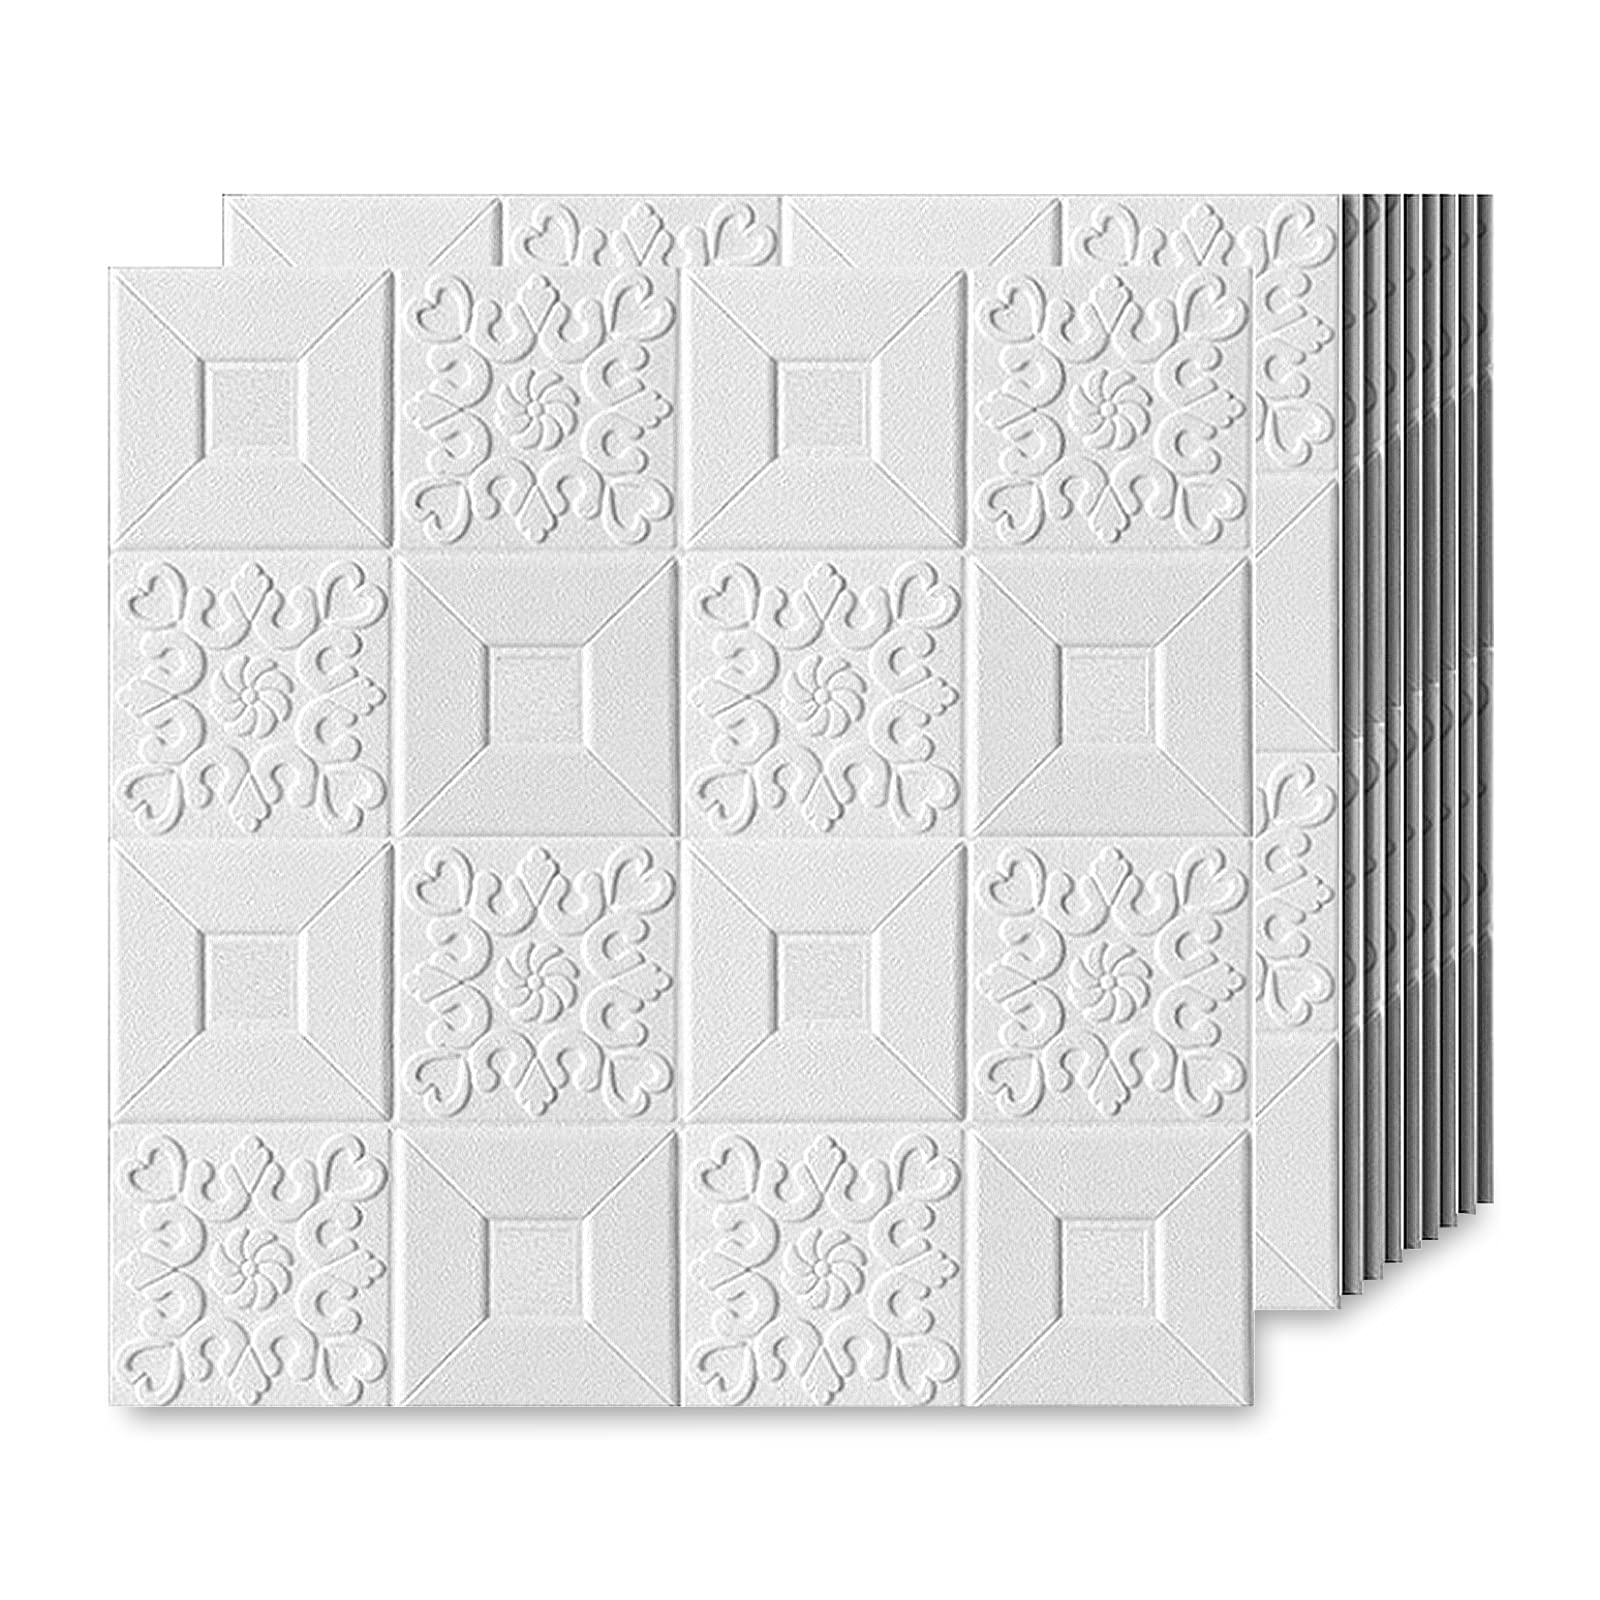 EMSMIL 3D Ziegel Tapete Selbstklebend Wandpaneele 10 Stk Weiß 70 x 70 cm Modern Wasserfest Steinoptik Tapeten 3D Effekt Schaumstoff Wandaufkleber für Badezimmer Schlafzimmer Wohnzimmer Küchen Wand